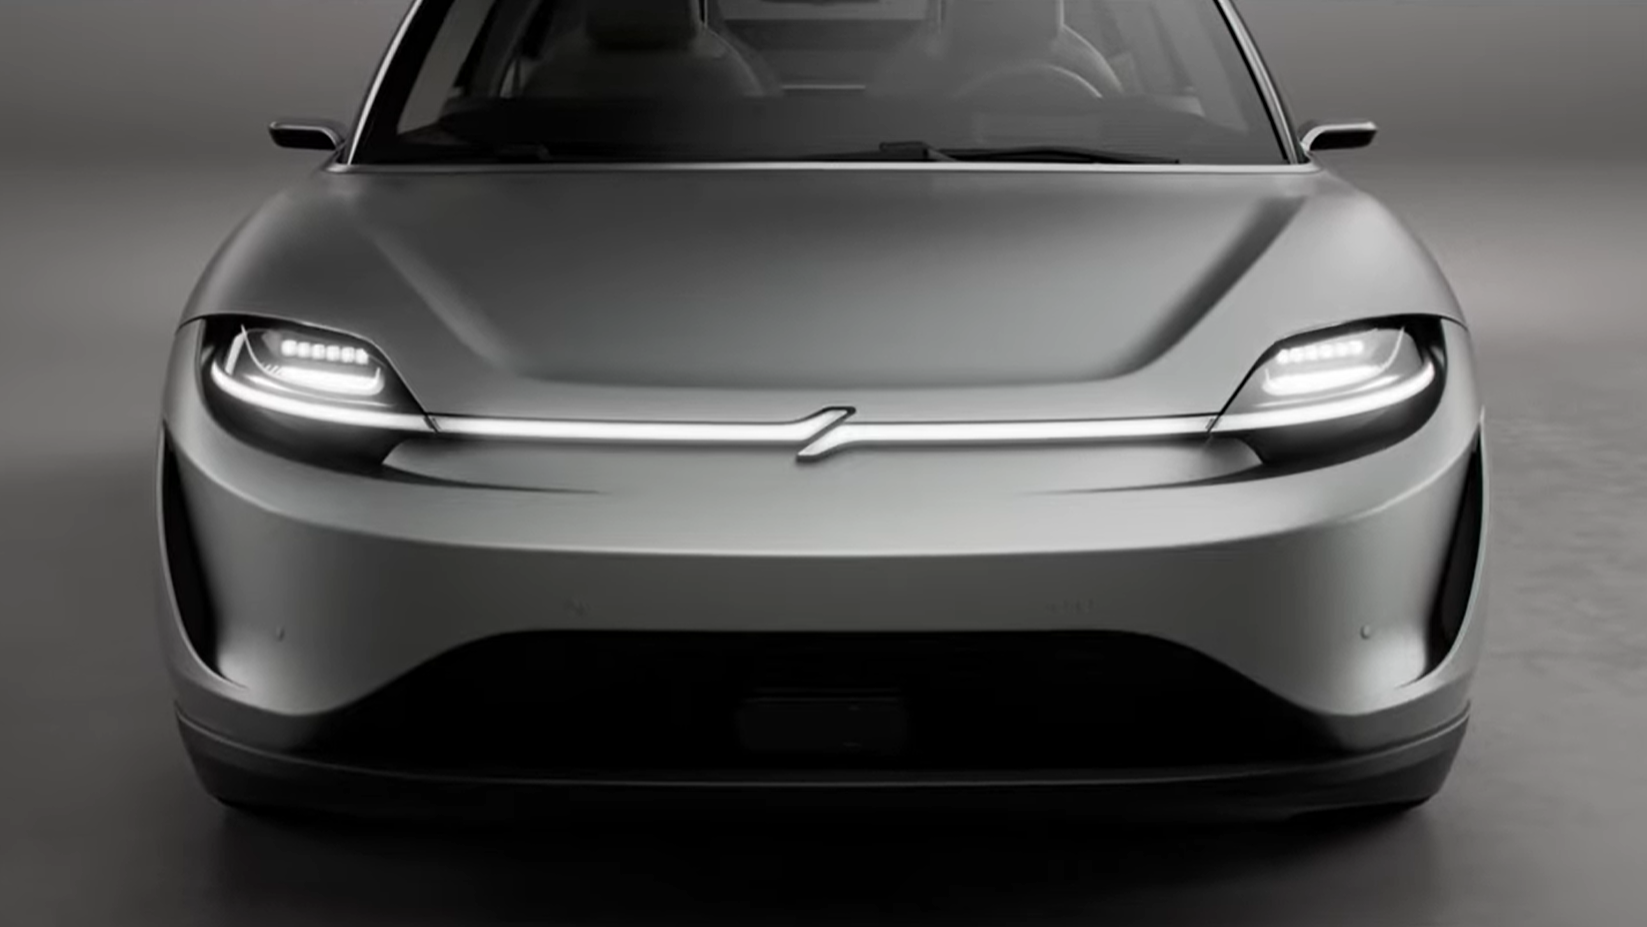 Sony unveils Vison S electric car concept